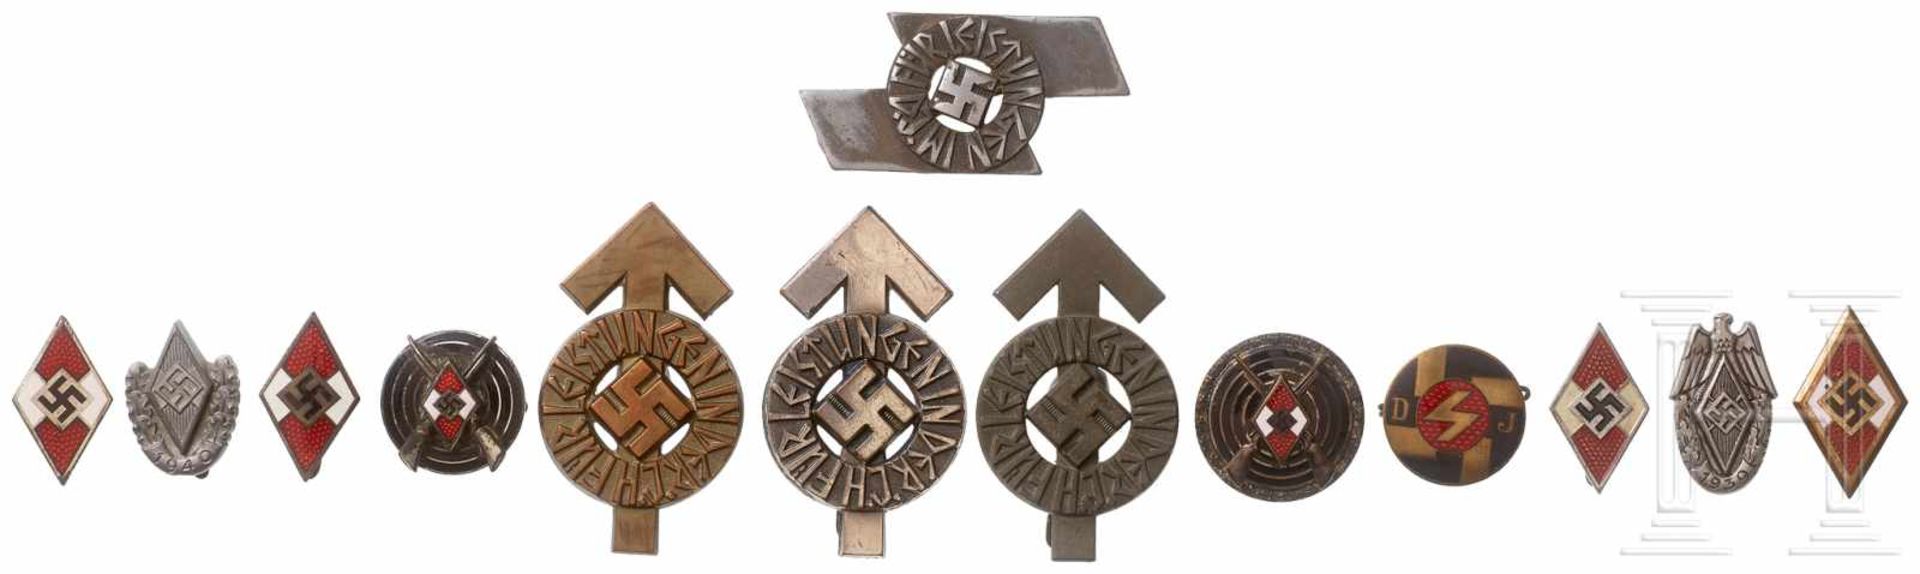 Kleine Sammlung HJ-AbzeichenGoldenes HJ-Abzeichen (B-Stück), drei Mitgliedsabzeichen, drei